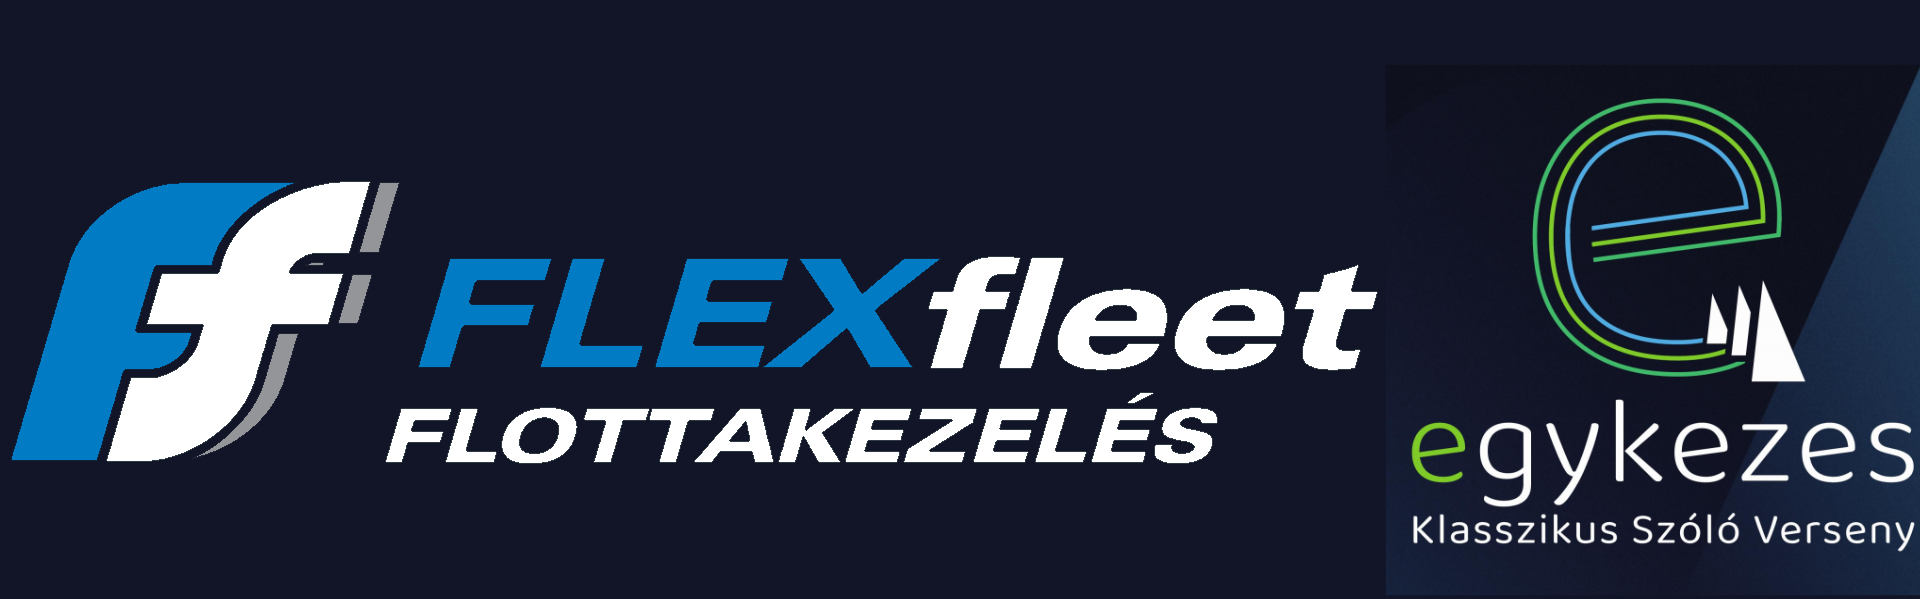 flex-fleet-egykezes-logo